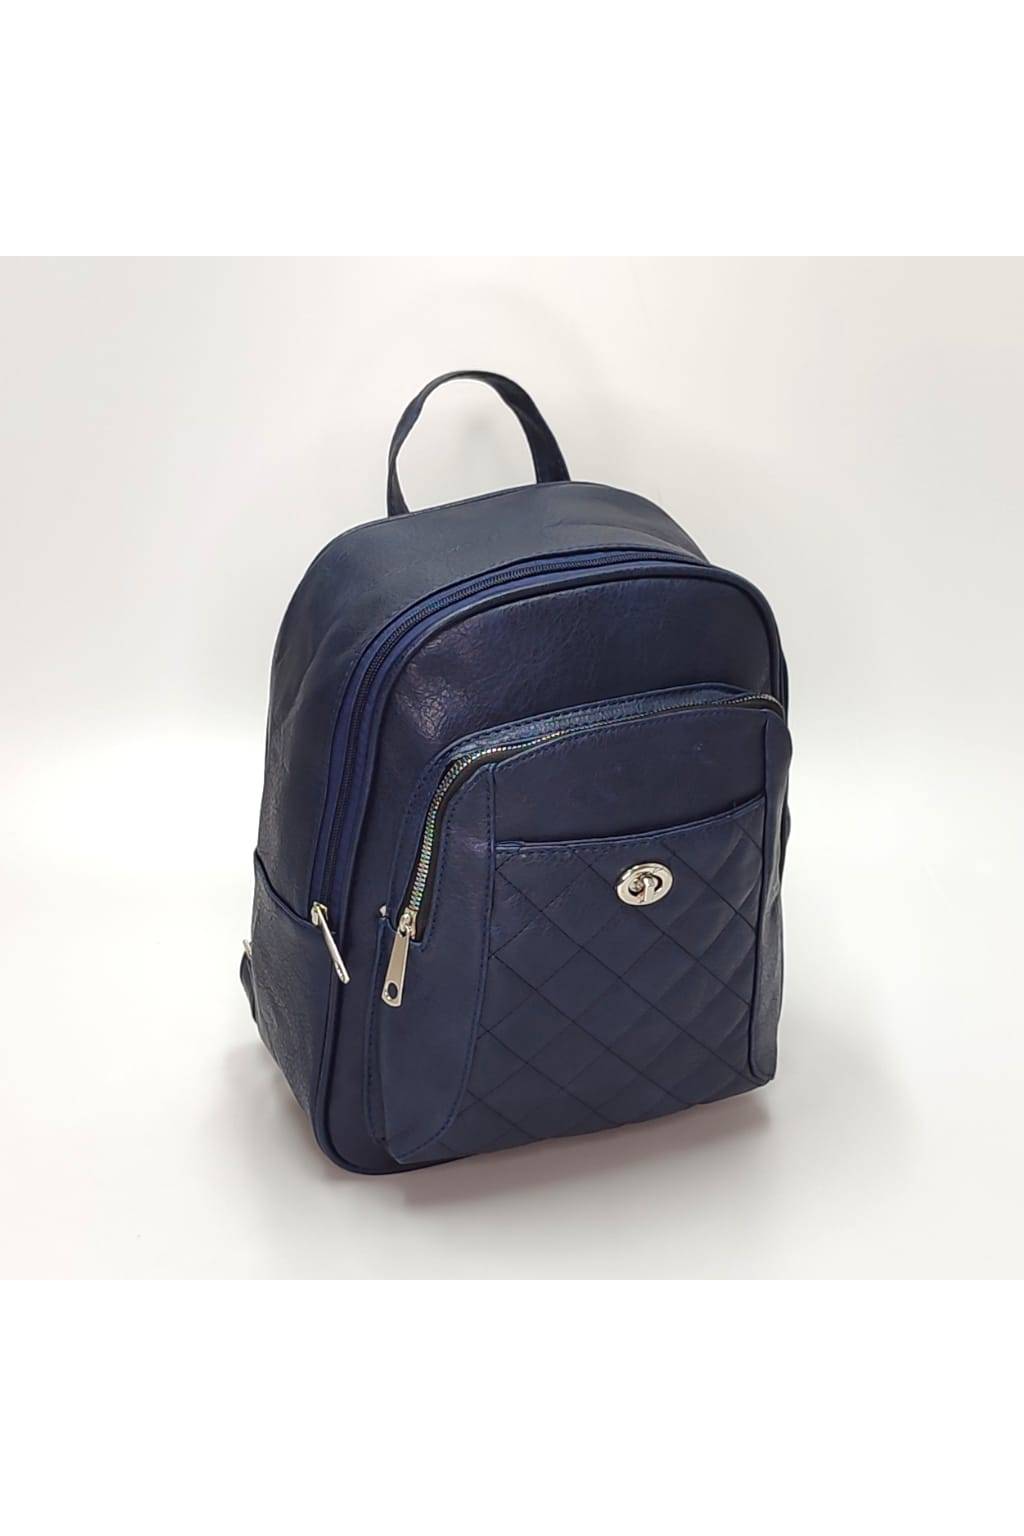 Dámsky ruksak DL0157 tmavo modrý www.kabelky vypredaj (1)